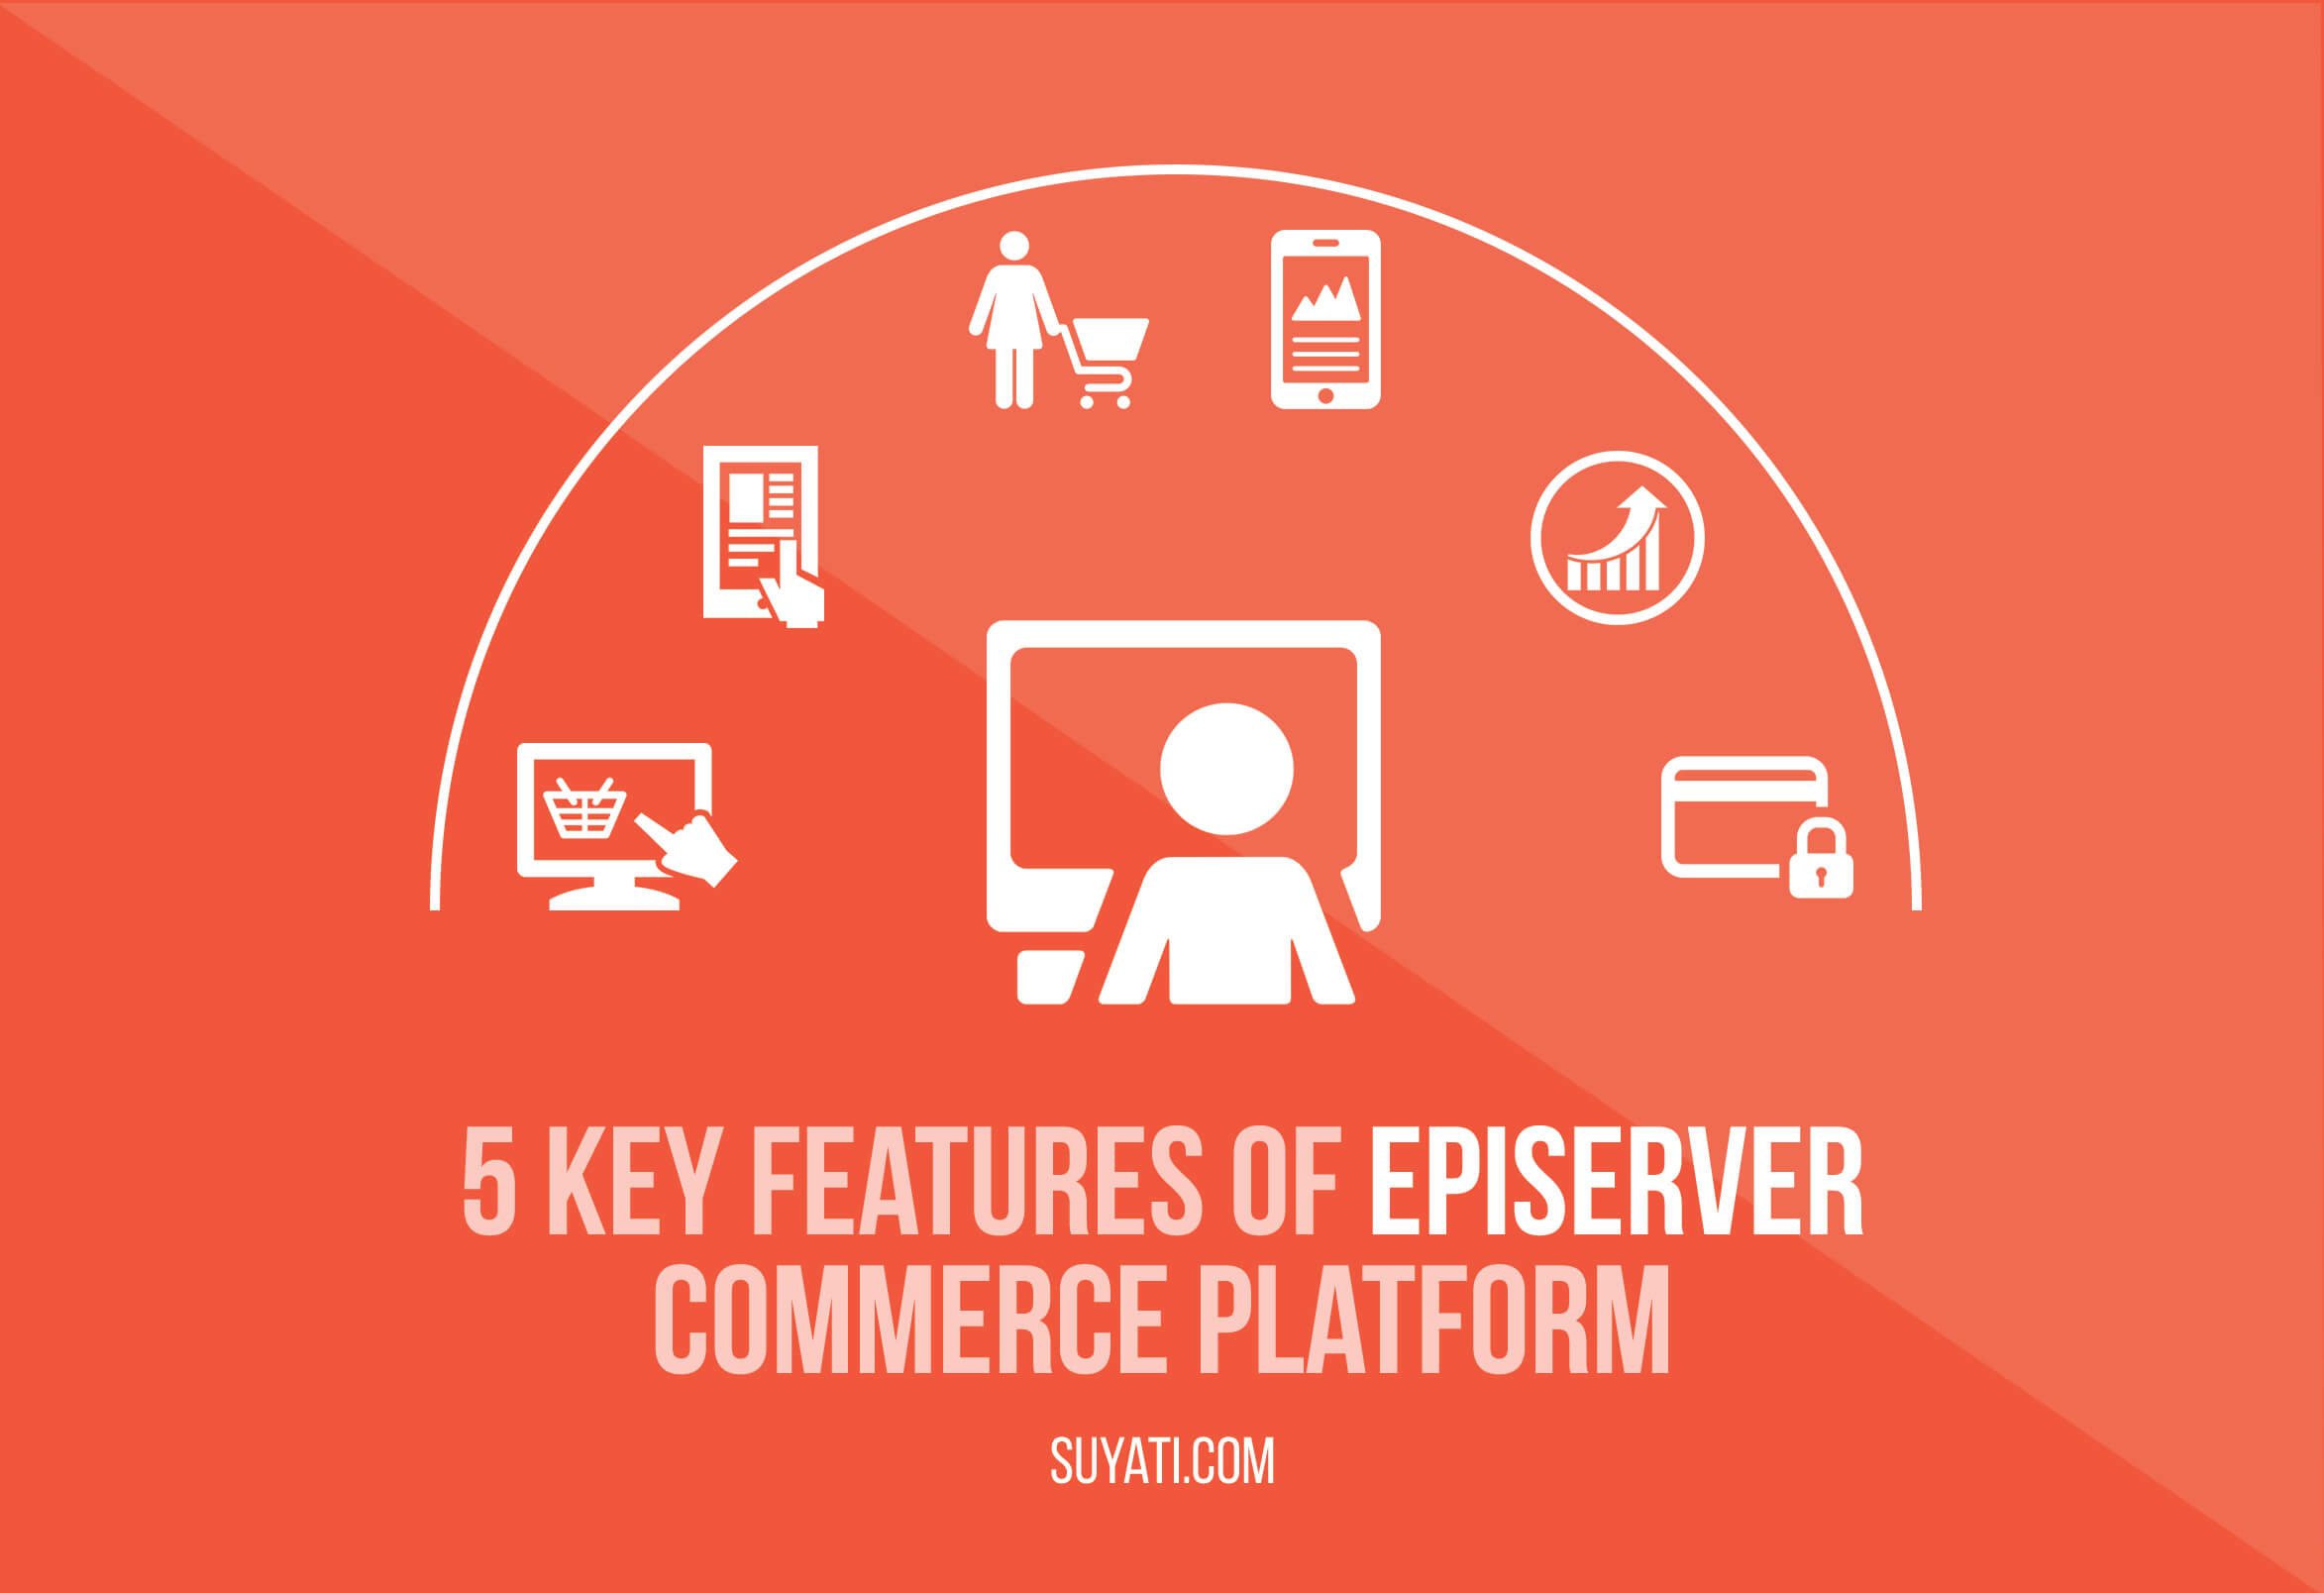 EPiServer Commerce platform